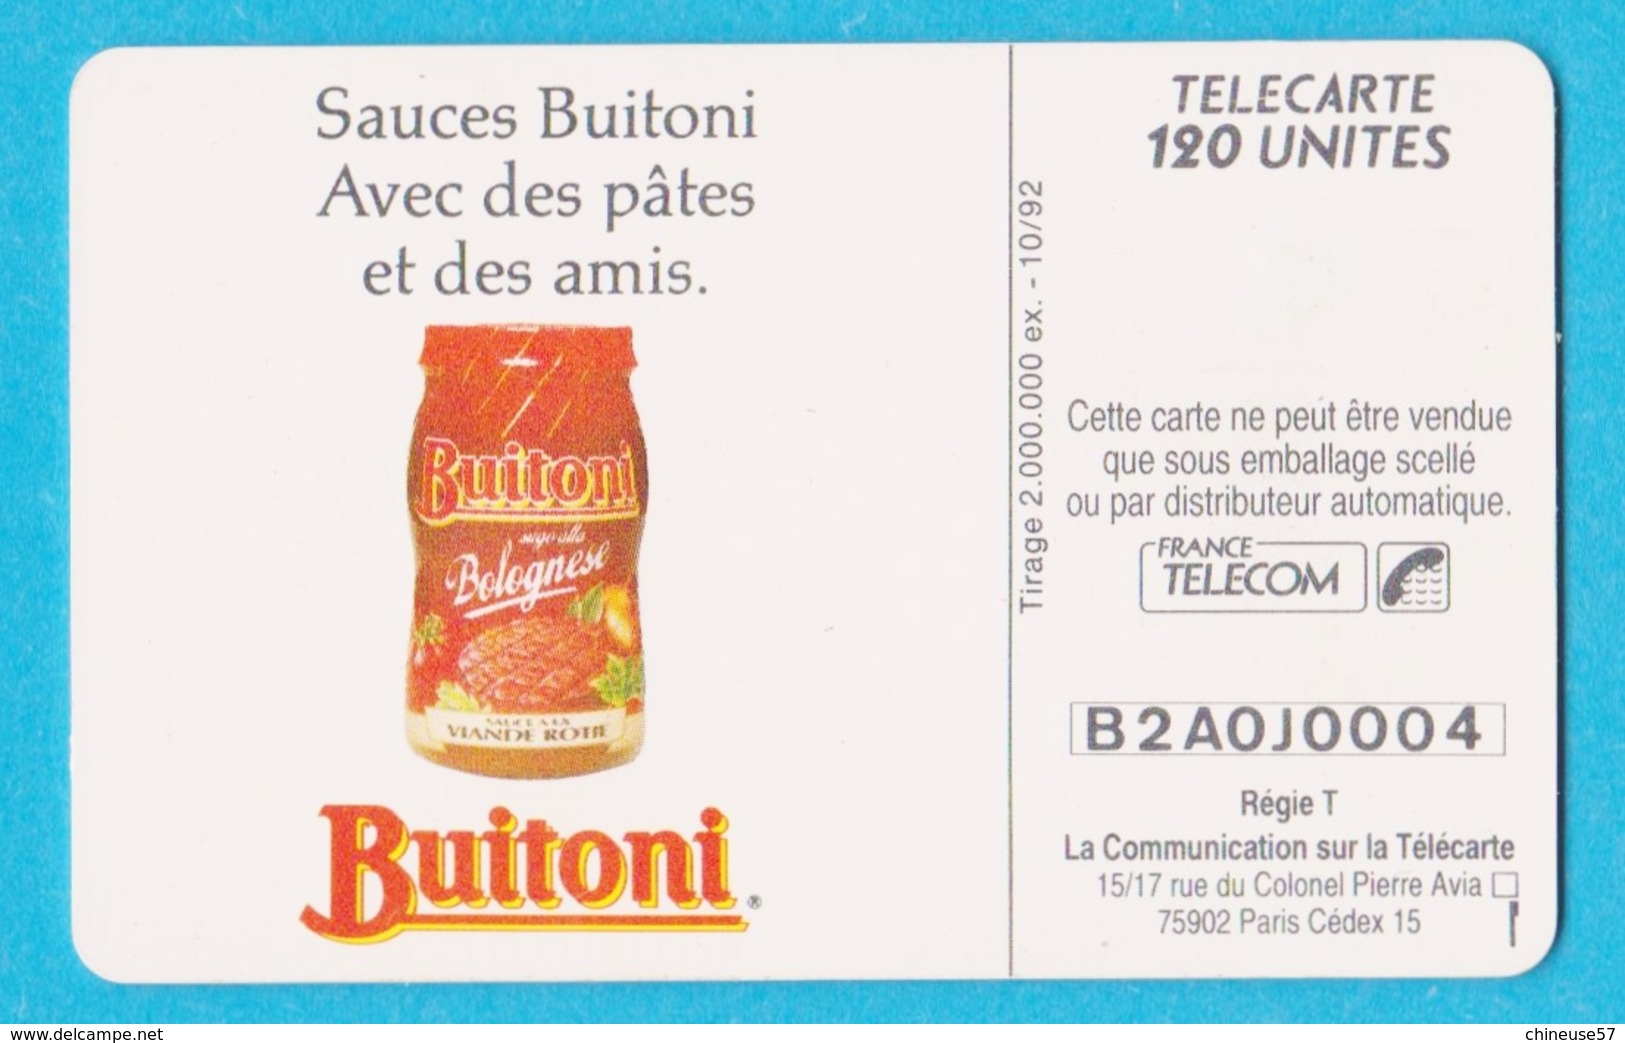 Télécarte 120 Buitoni Sauces Pates - 120 Unités 